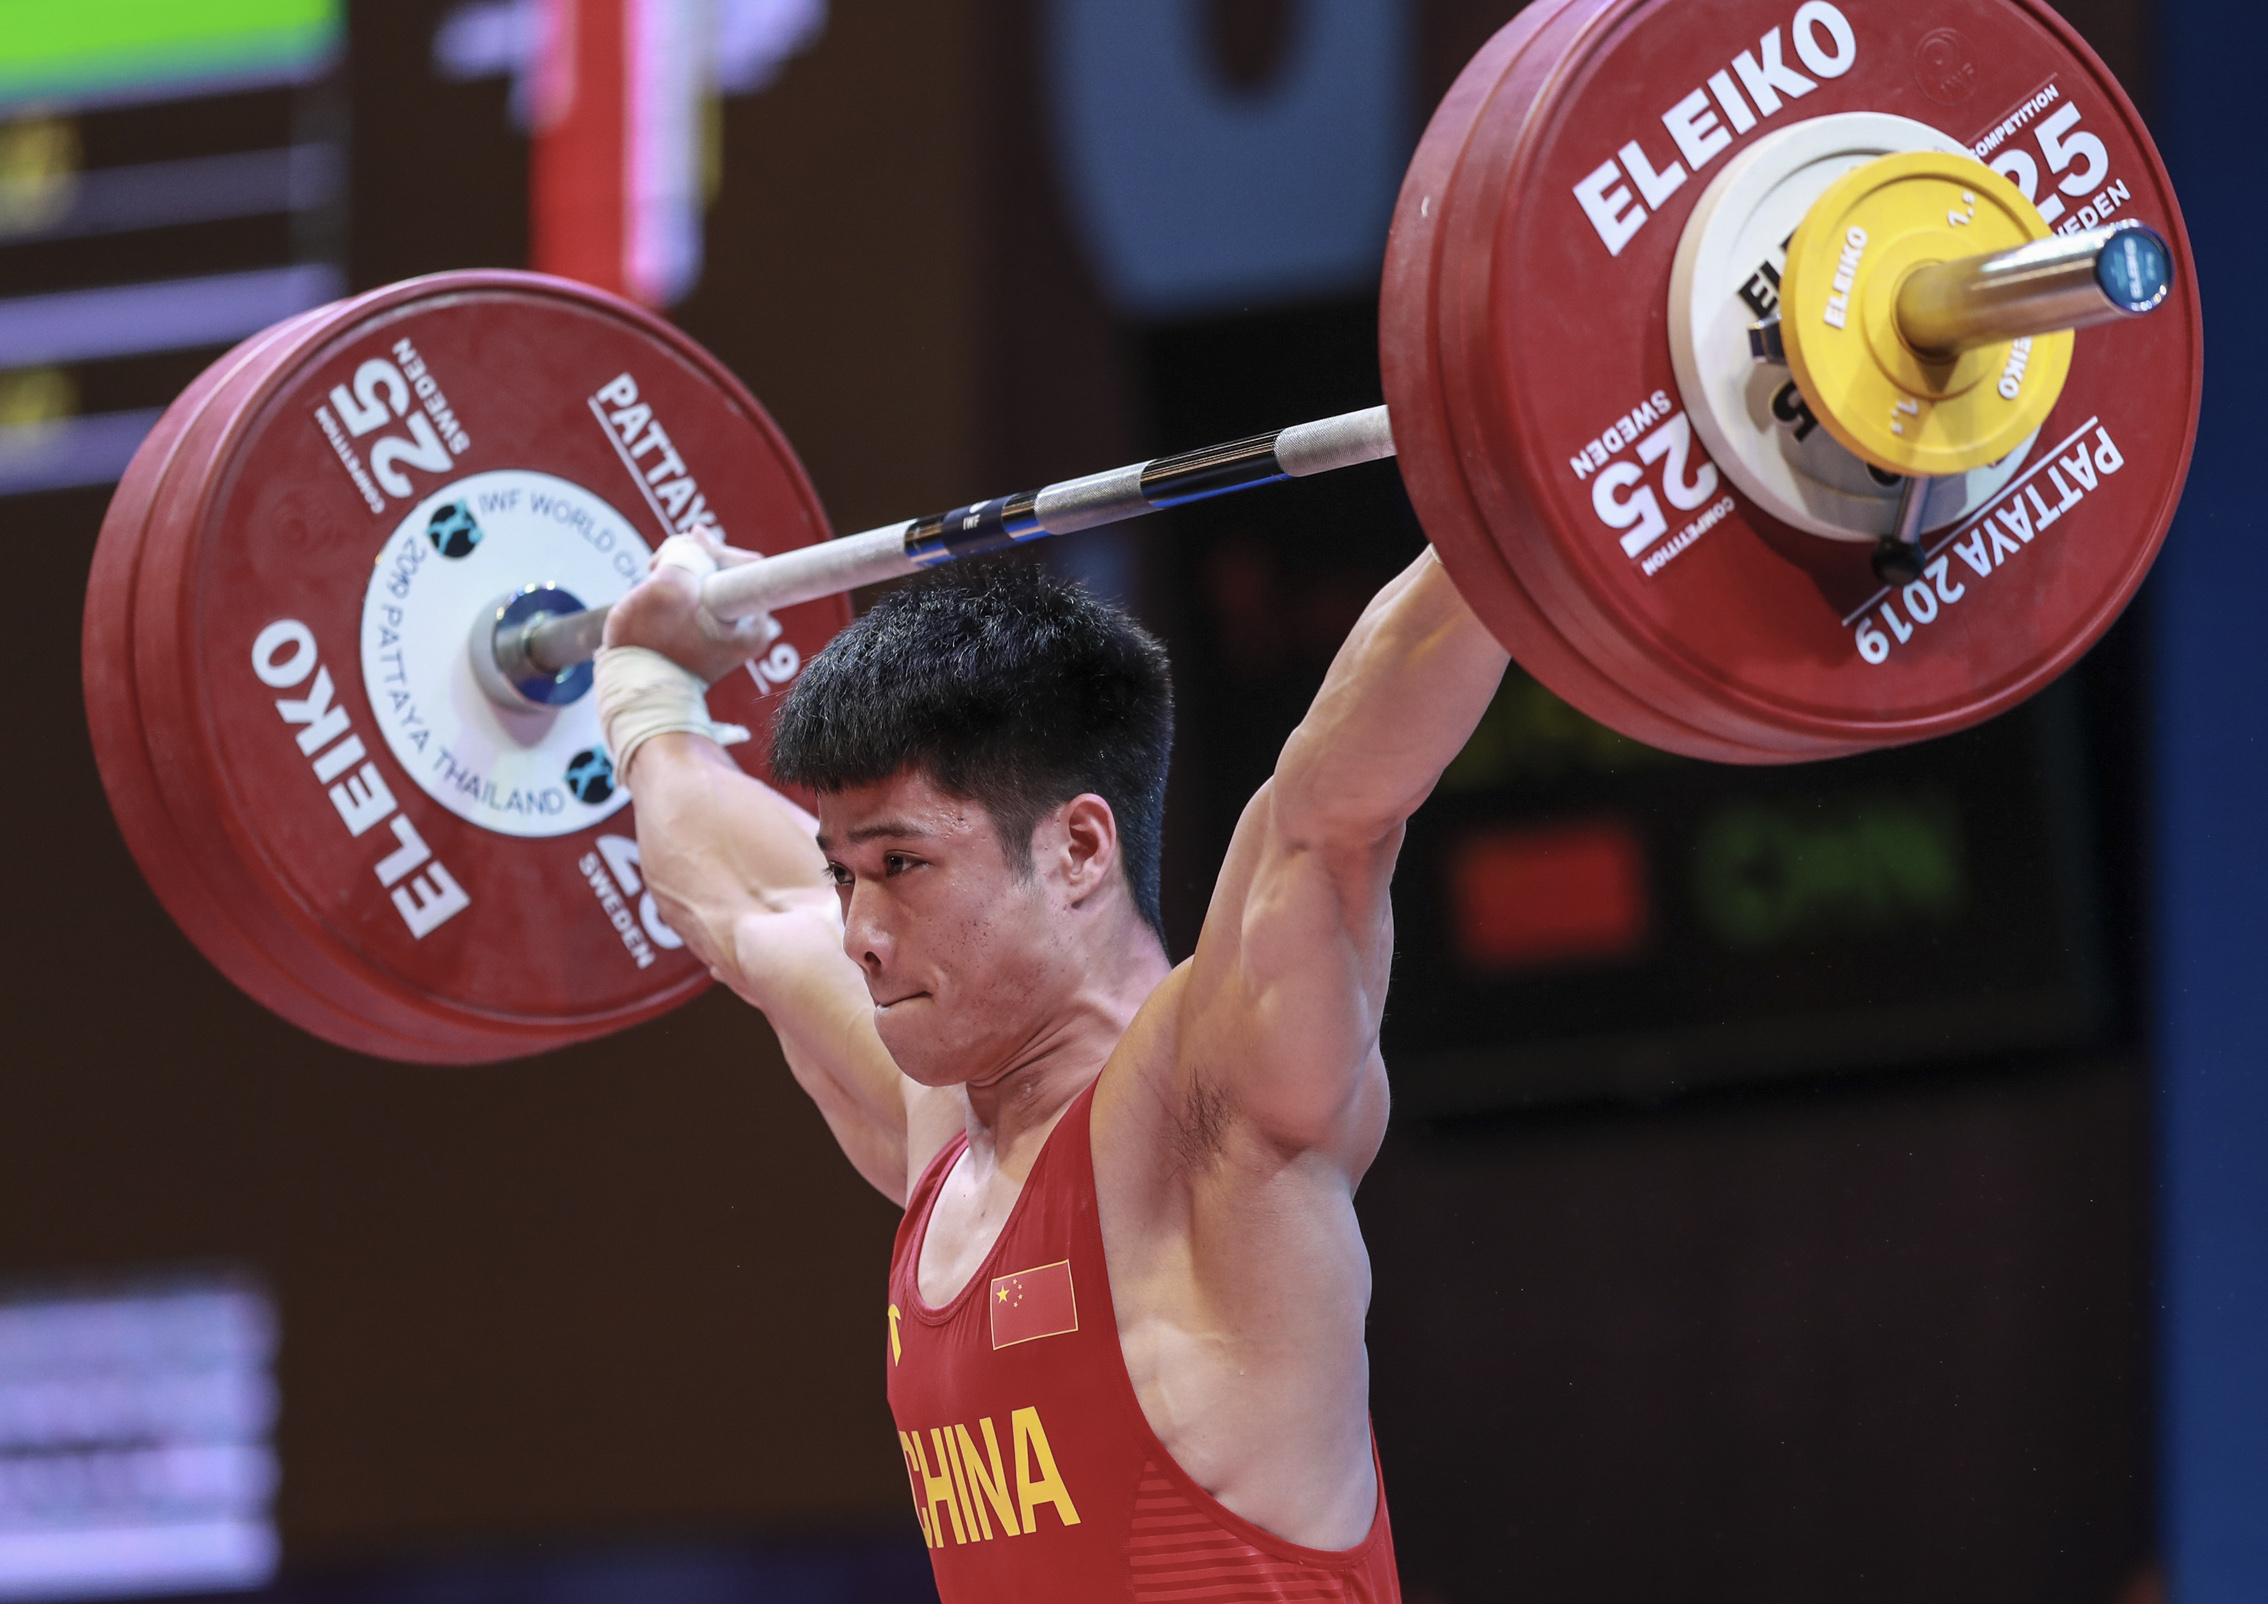 在泰国芭提雅举行的2019世界举重锦标赛男子61公斤级比赛中,中国选手